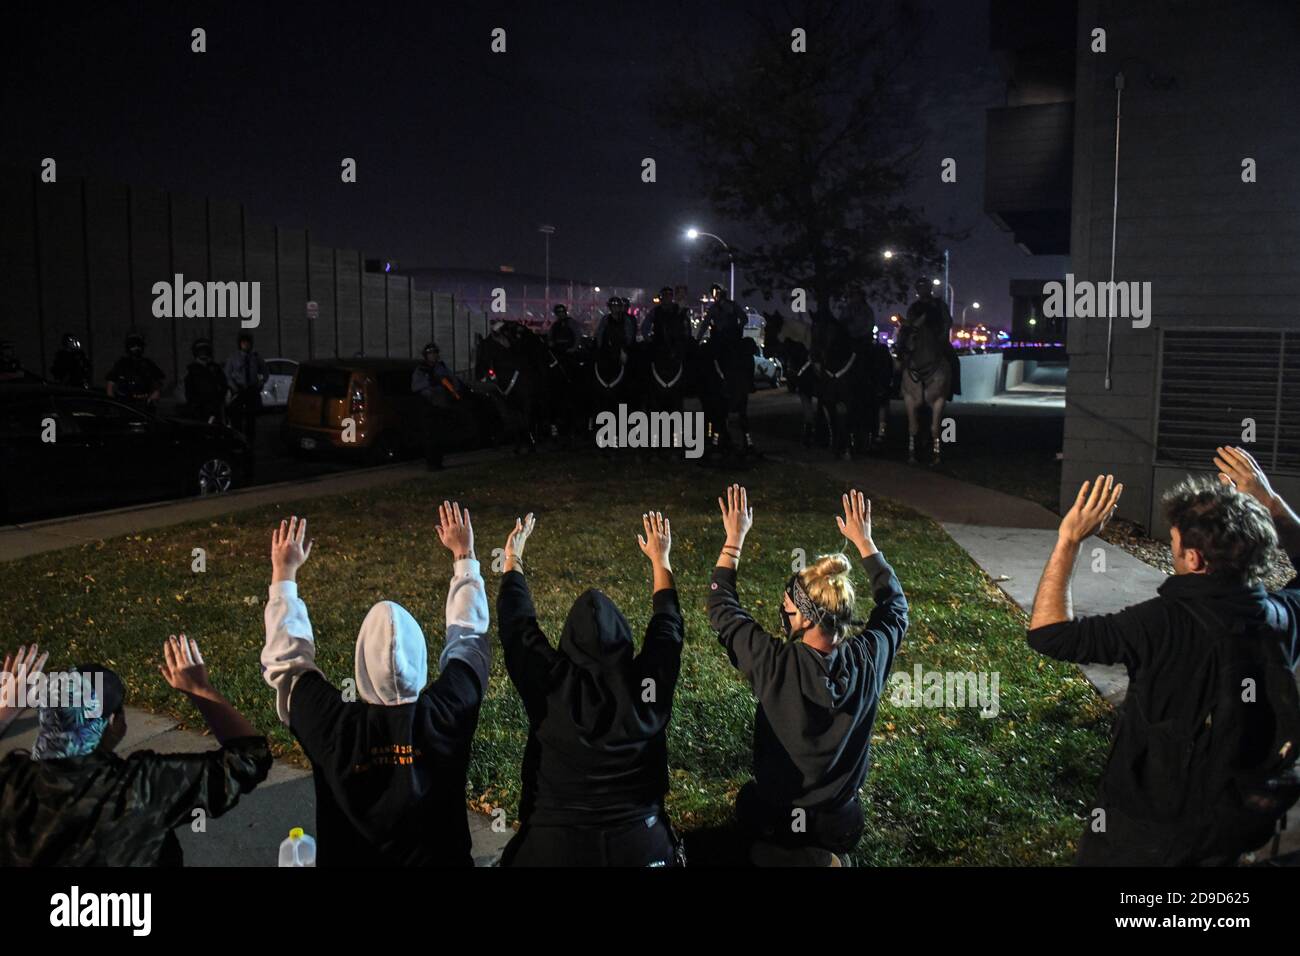 Les manifestants affrontent des policiers à l'extérieur d'un complexe d'appartements à côté de l'Interstate 94 (I-94) le lendemain du jour des élections à Minneapolis, Minnesota, États-Unis, le 4 novembre 2020. REUTERS/Nicholas Pfosi Banque D'Images